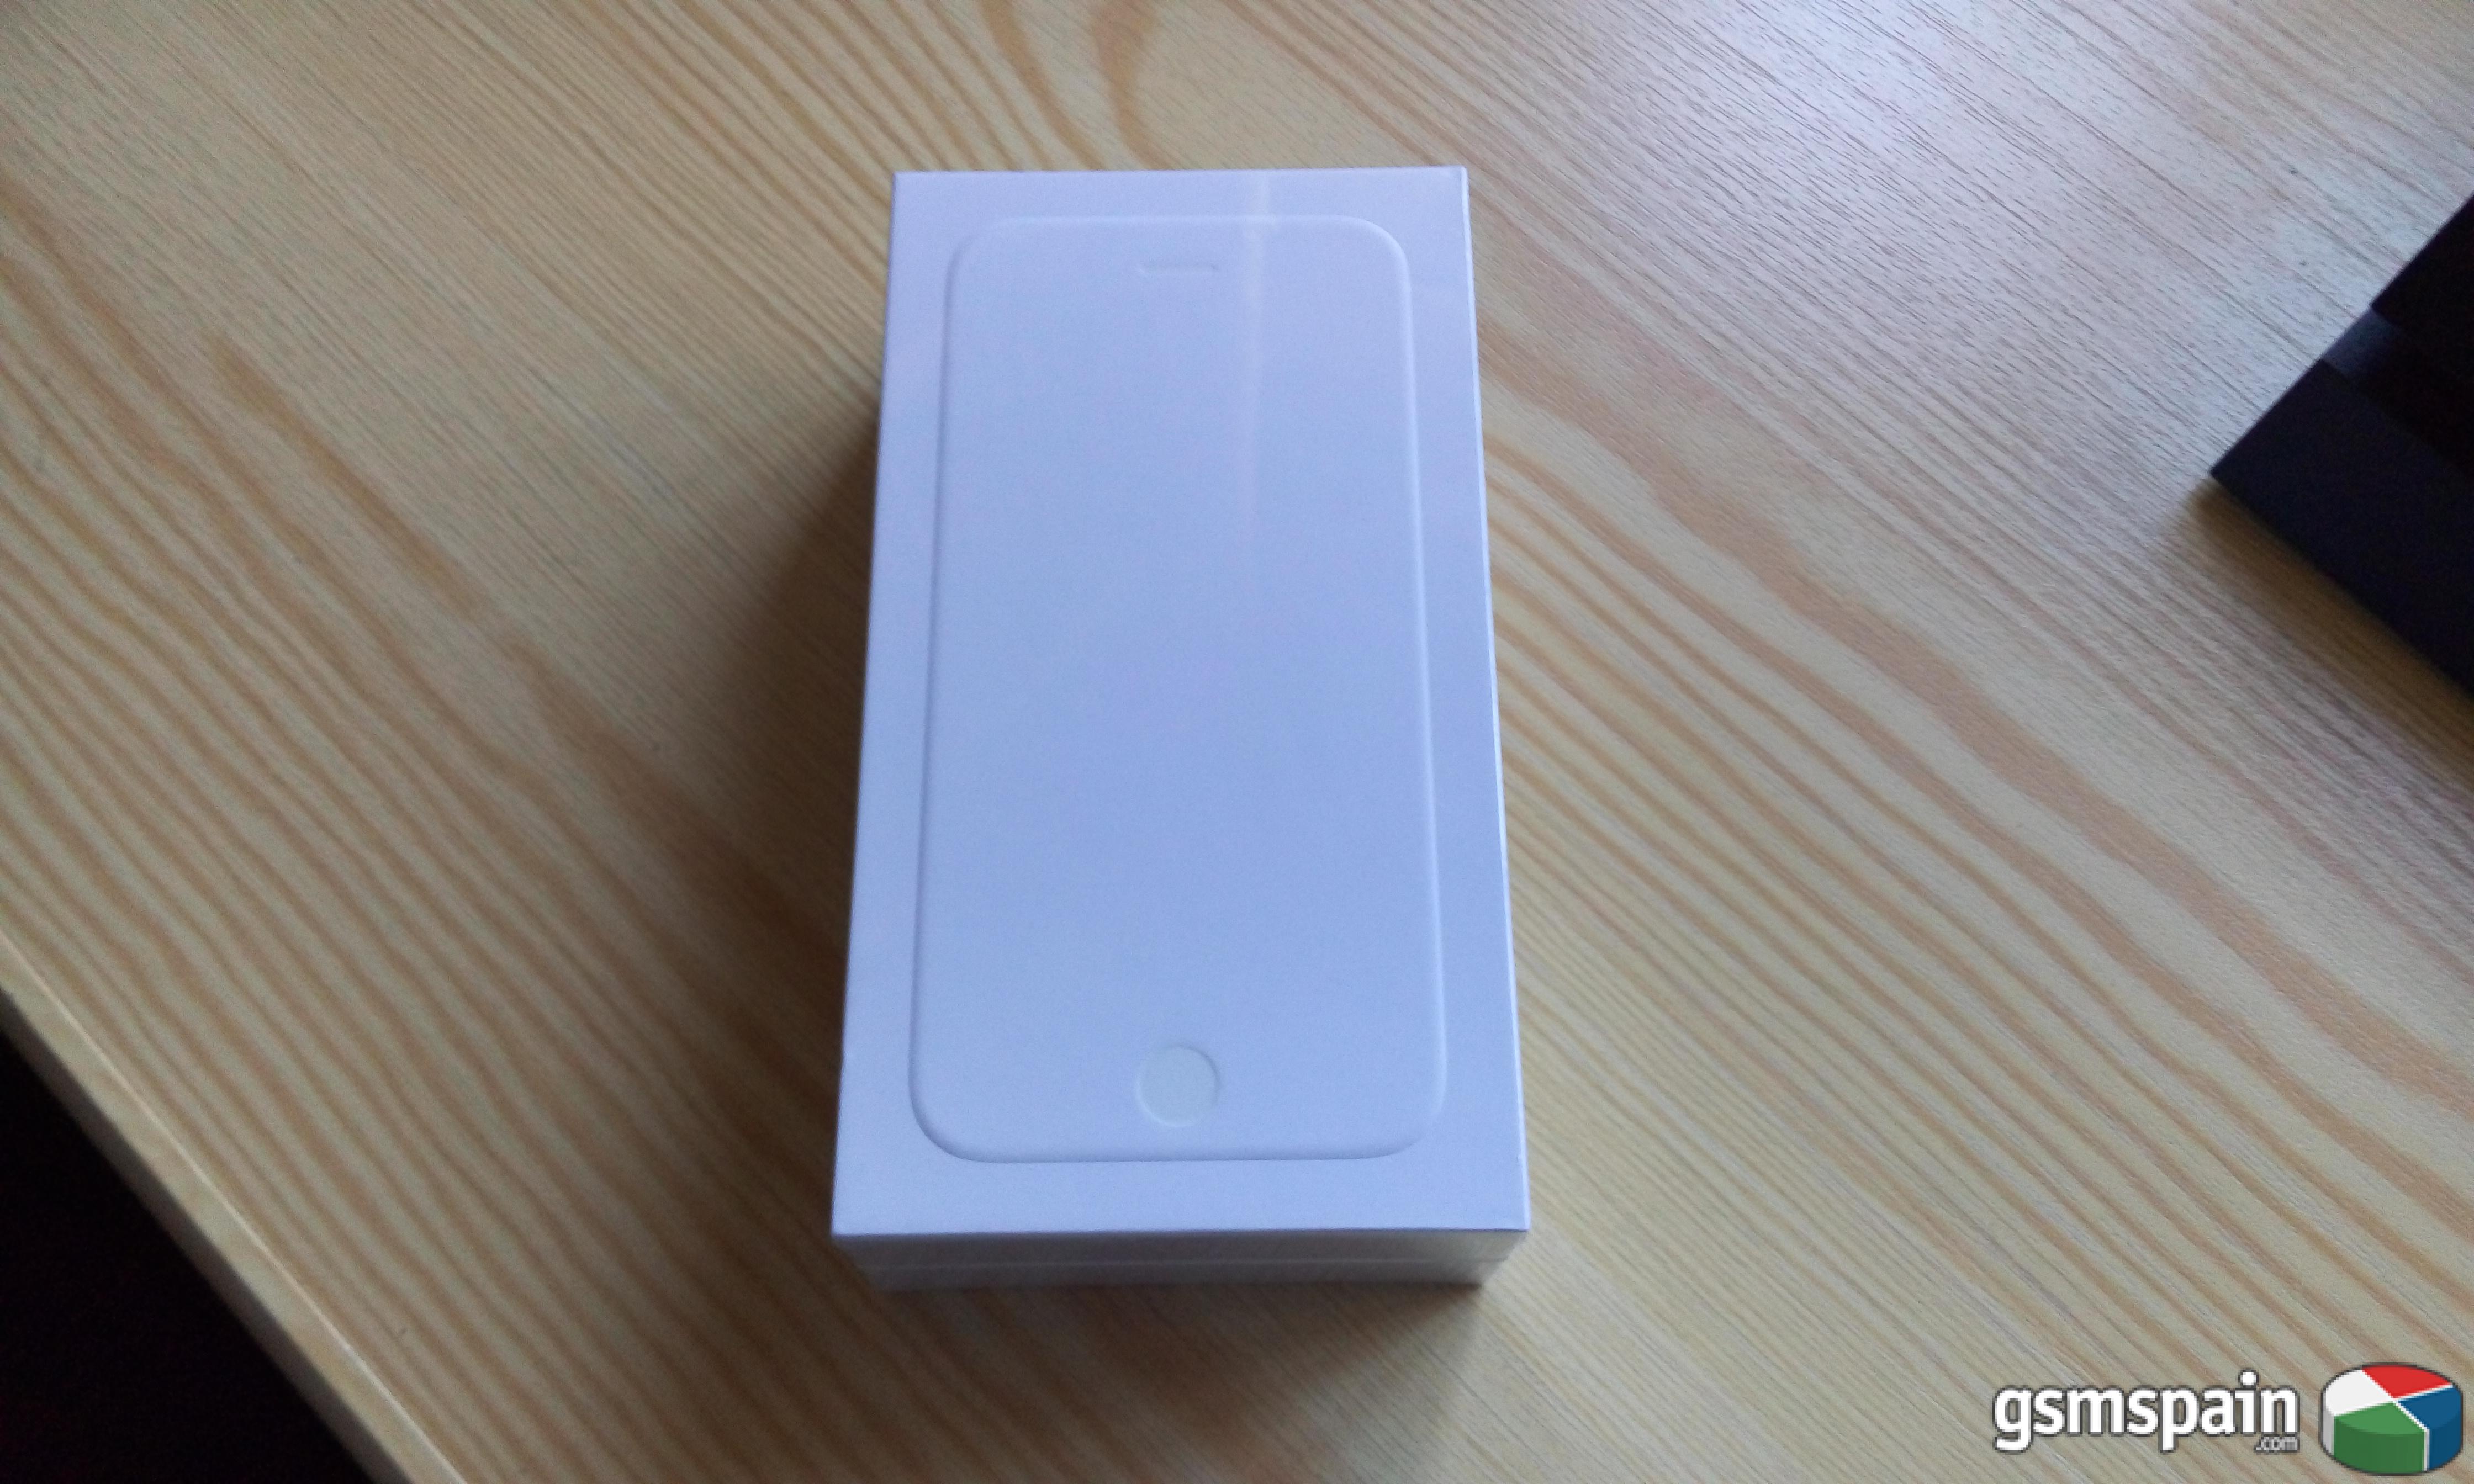 [CAMBIO] iPhone 6 16GB precintadado (de tienda)